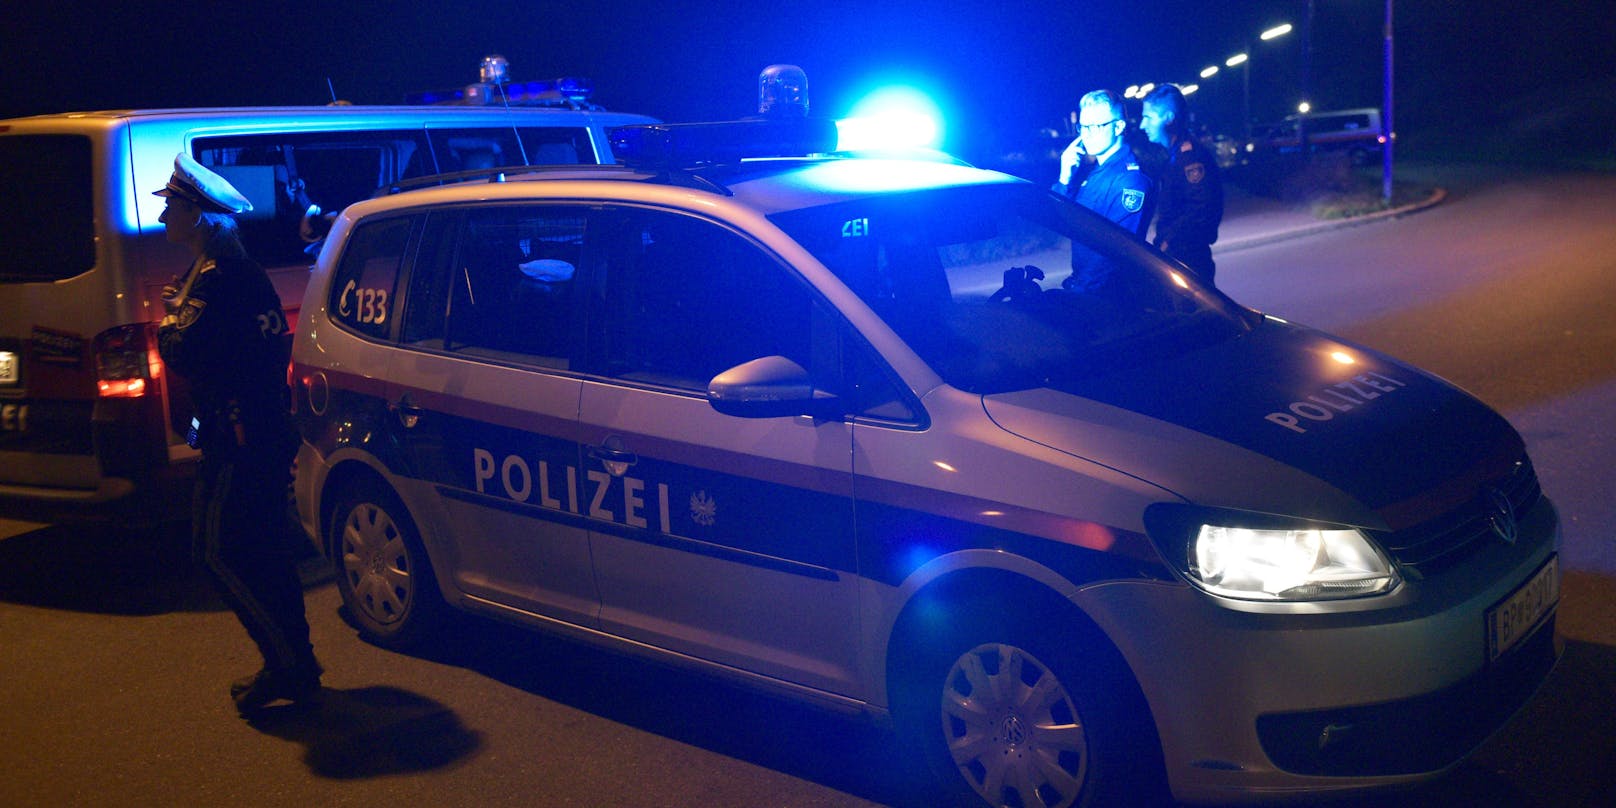 Die Polizei musste in der Nacht auf Montag in Wien ausrücken. (Symbolbild)